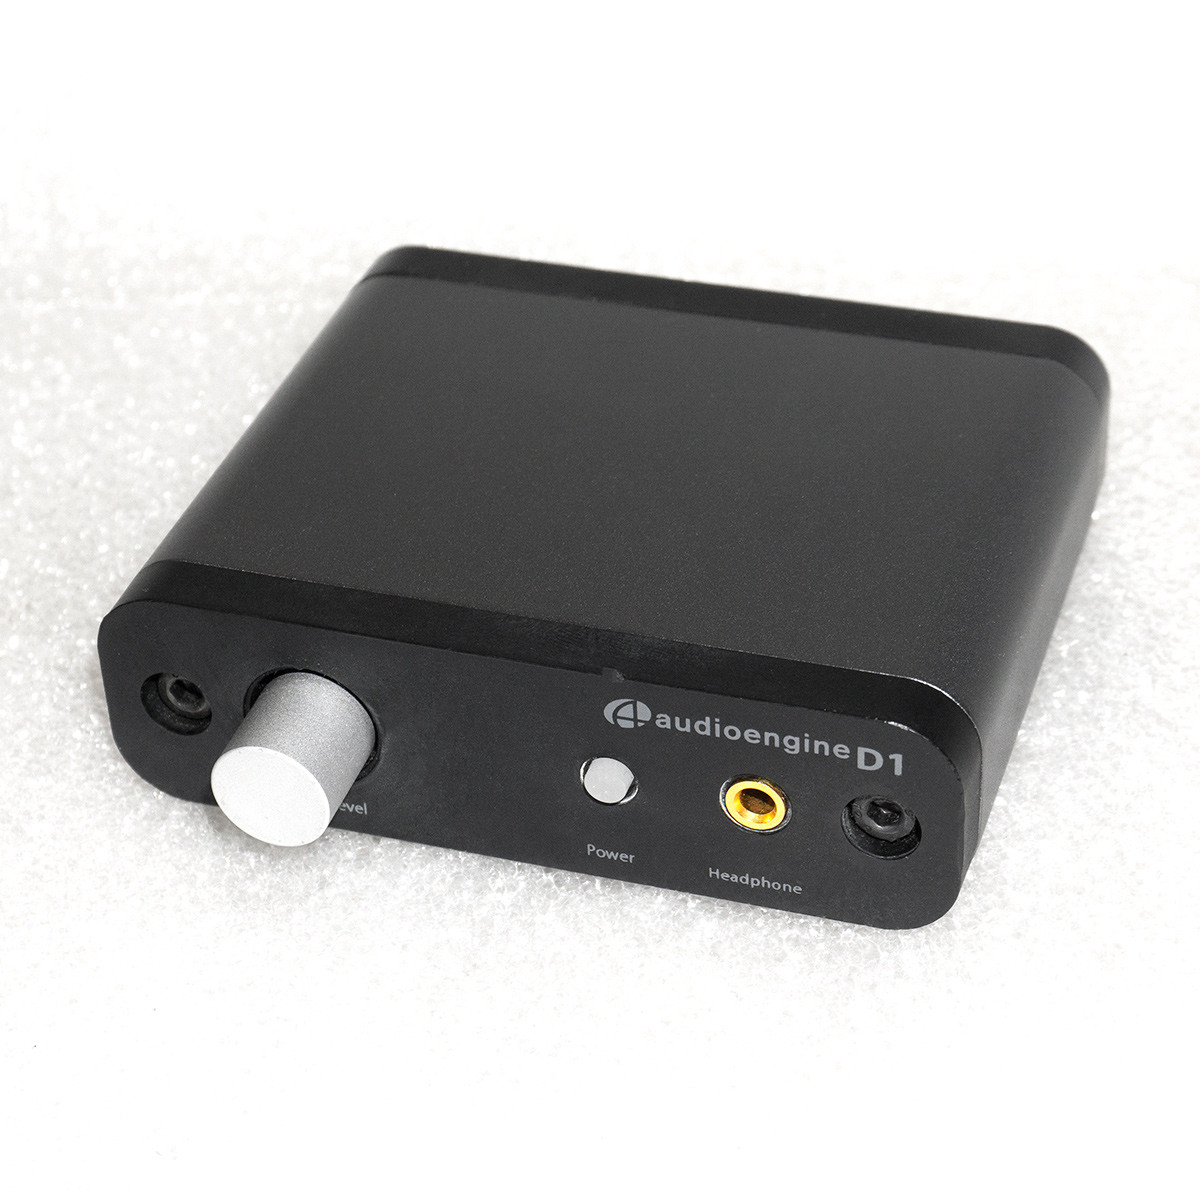 Б/У AudioEngine D1 DAC, 24 біт, 192 кГц, USB ЦАП + підсилювач для навушників, звукова карта для ПК / Mac / ТБ